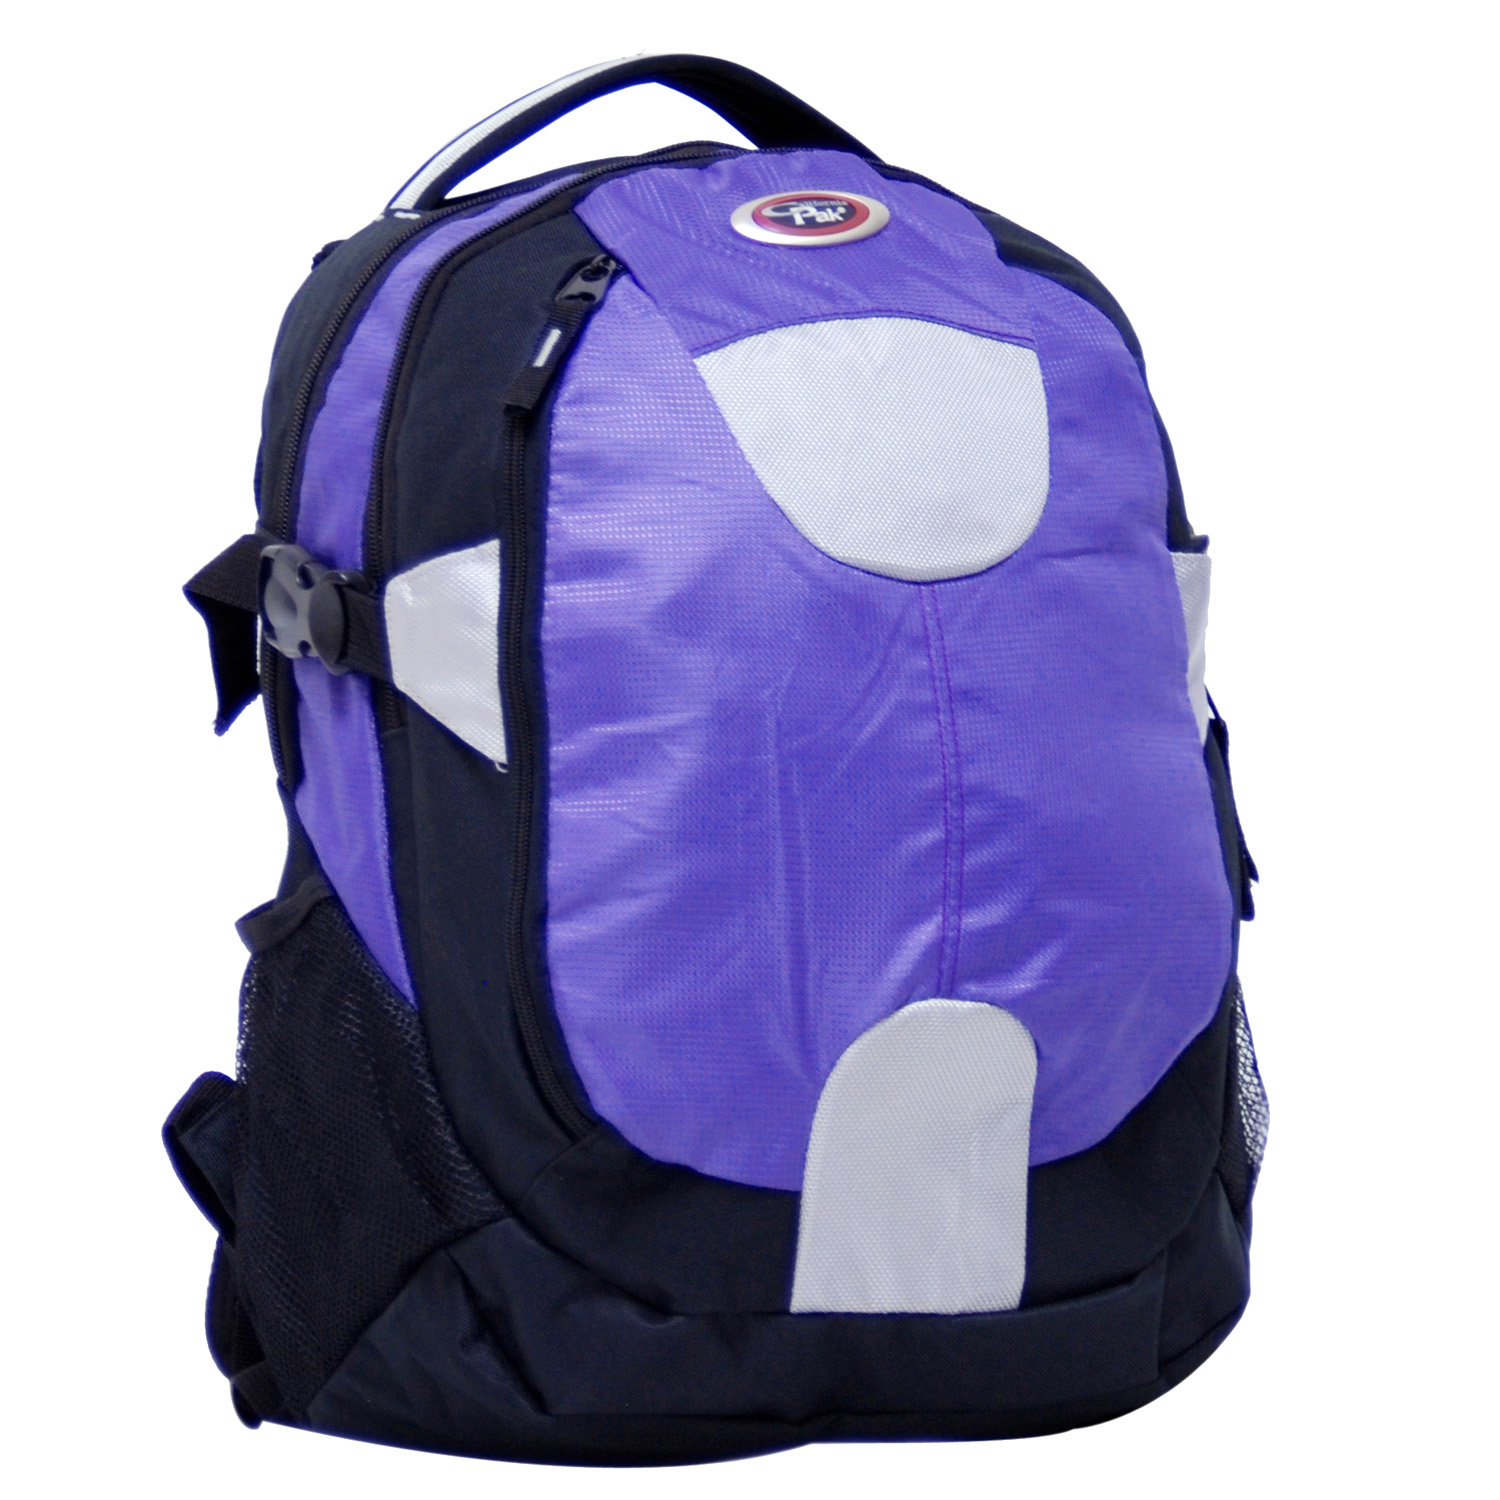 19" Backpack (Rhino)